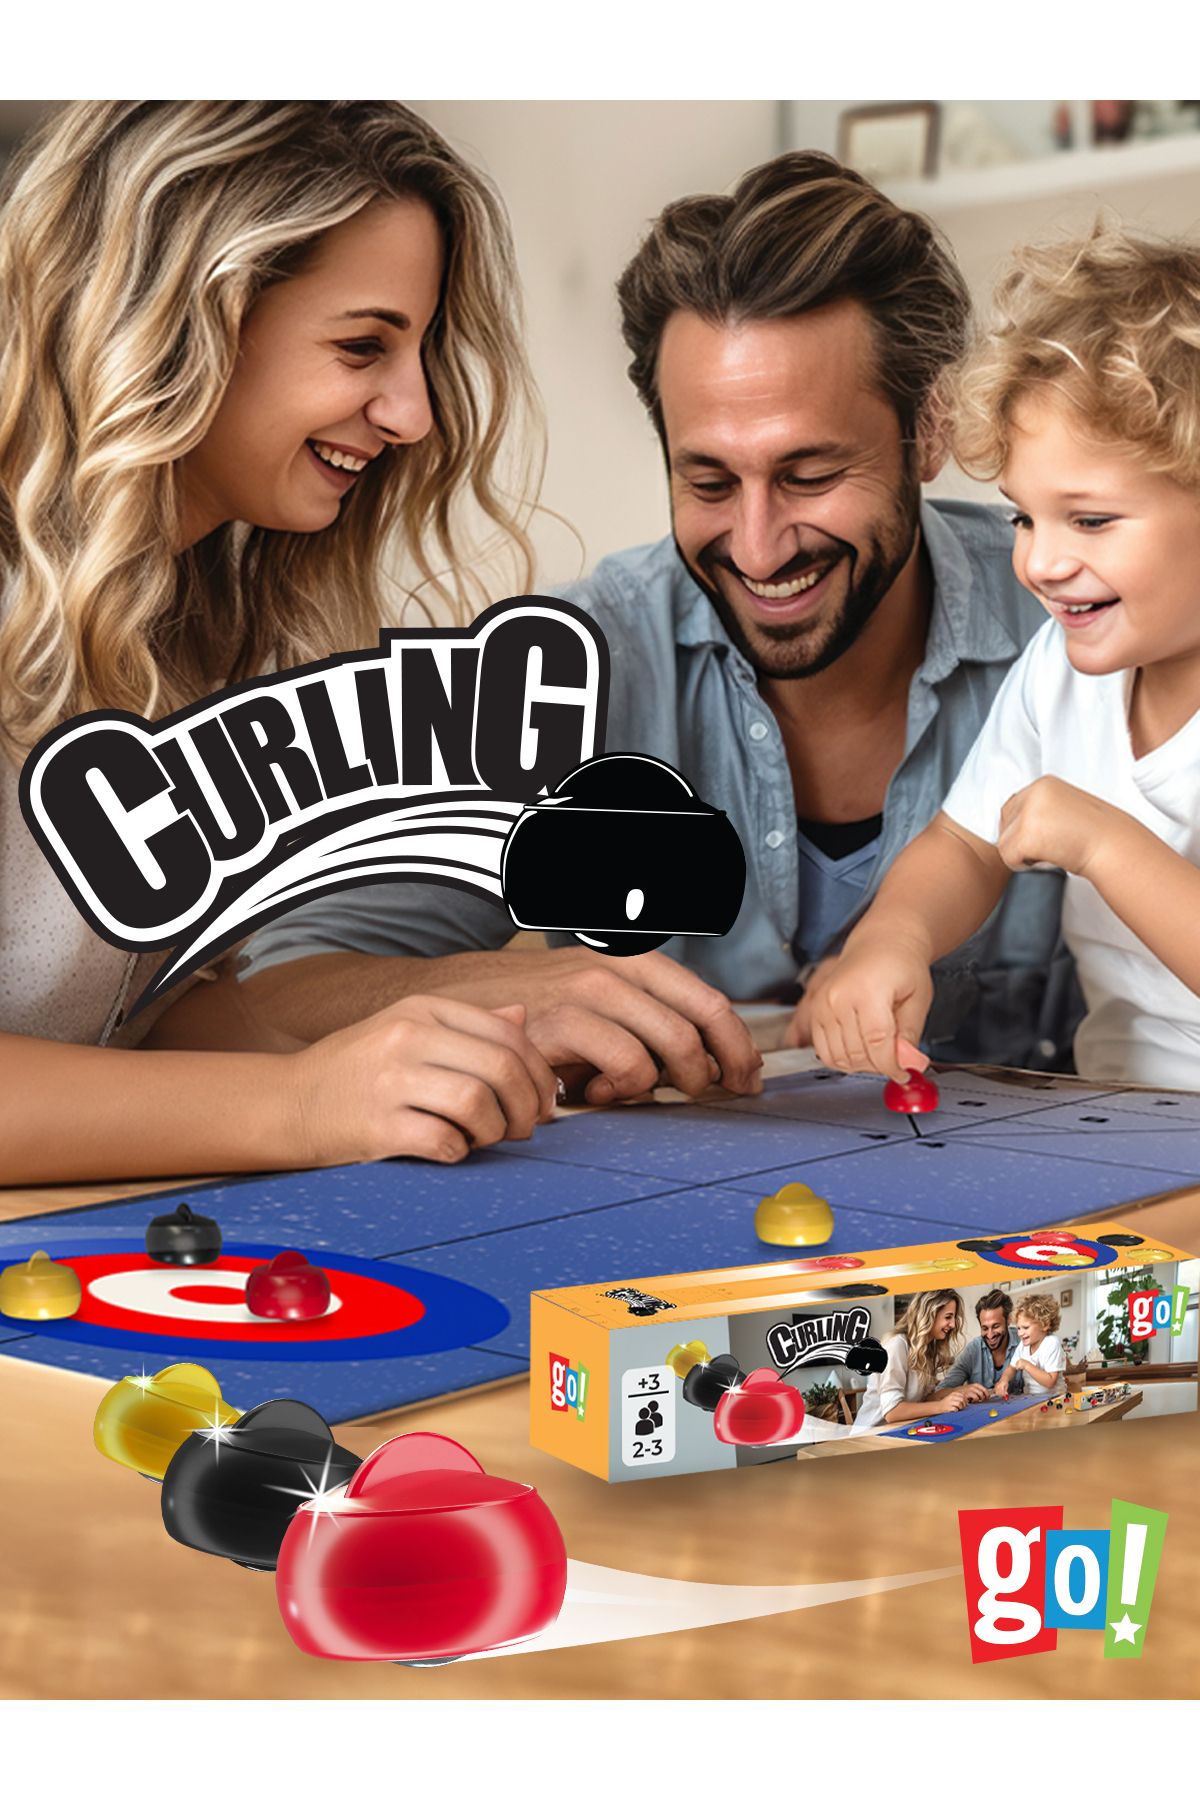 Go Toys Mini Curling Ekransız Vakit Geçirme Aktivitesi Aile Etkileşimi Kutu Oyunu